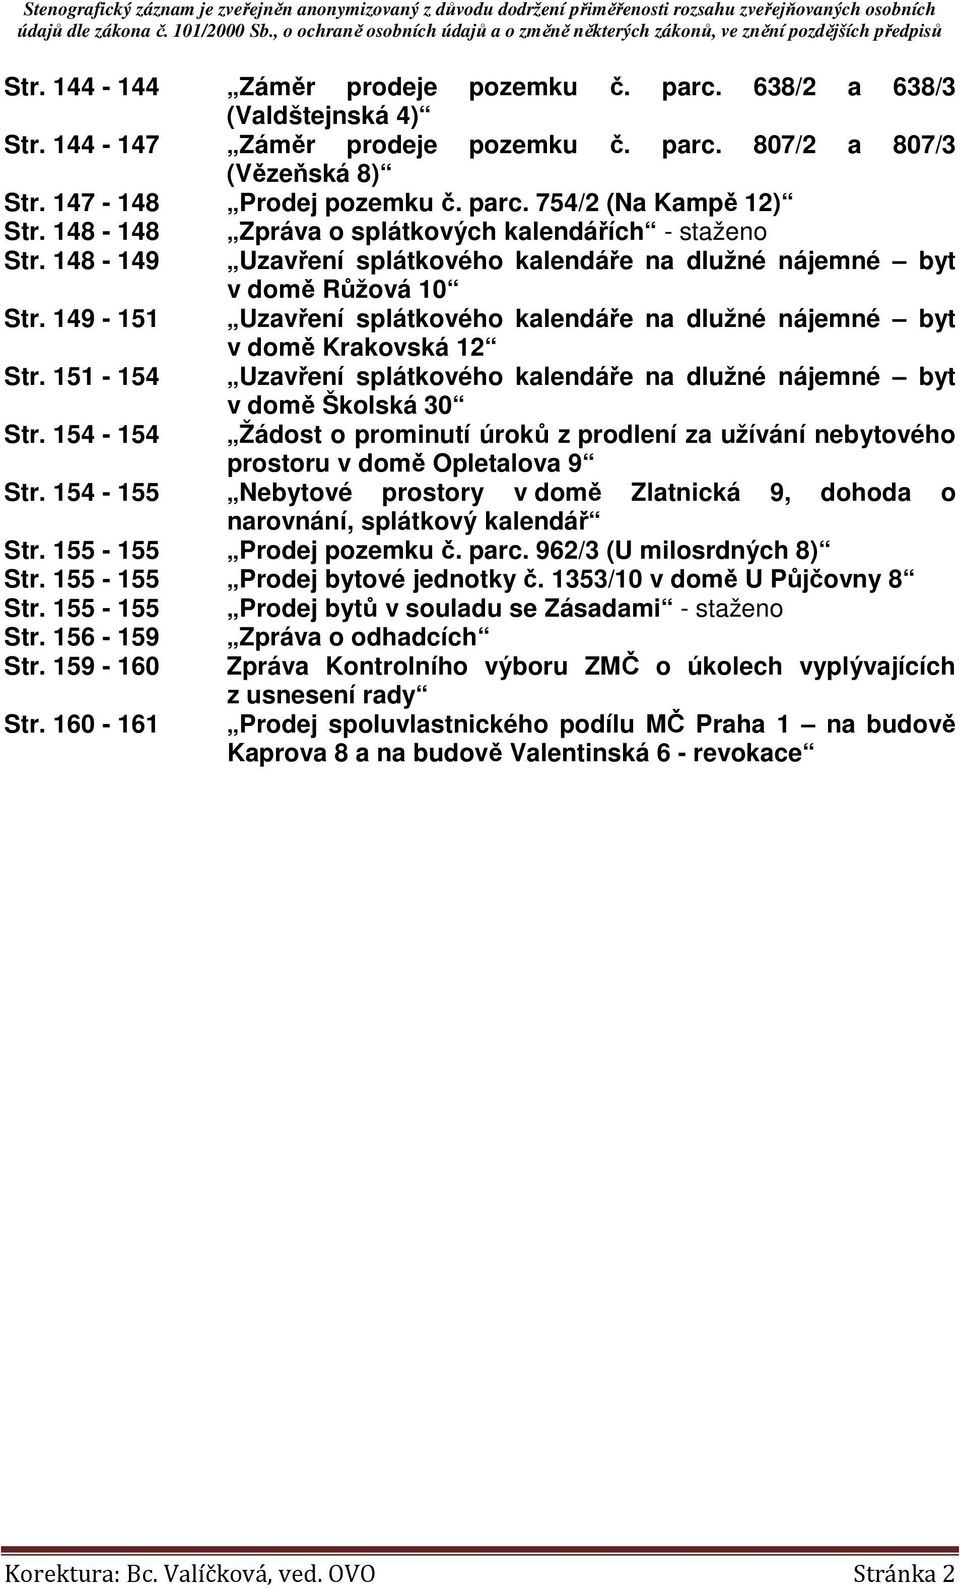 149-151 Uzavření splátkového kalendáře na dlužné nájemné byt v domě Krakovská 12 Str. 151-154 Uzavření splátkového kalendáře na dlužné nájemné byt Str.